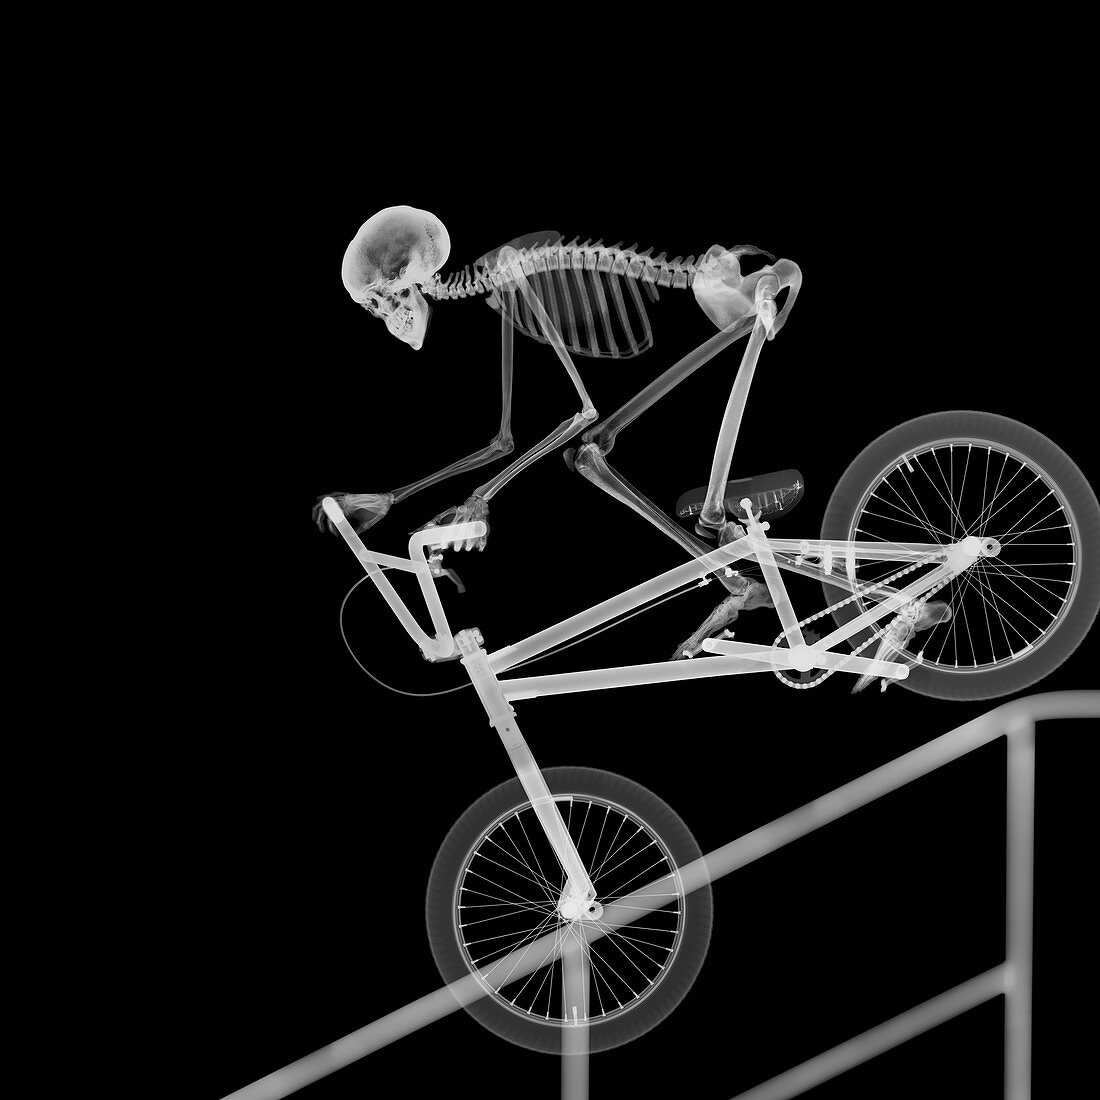 Skeleton bike stunt, X-ray